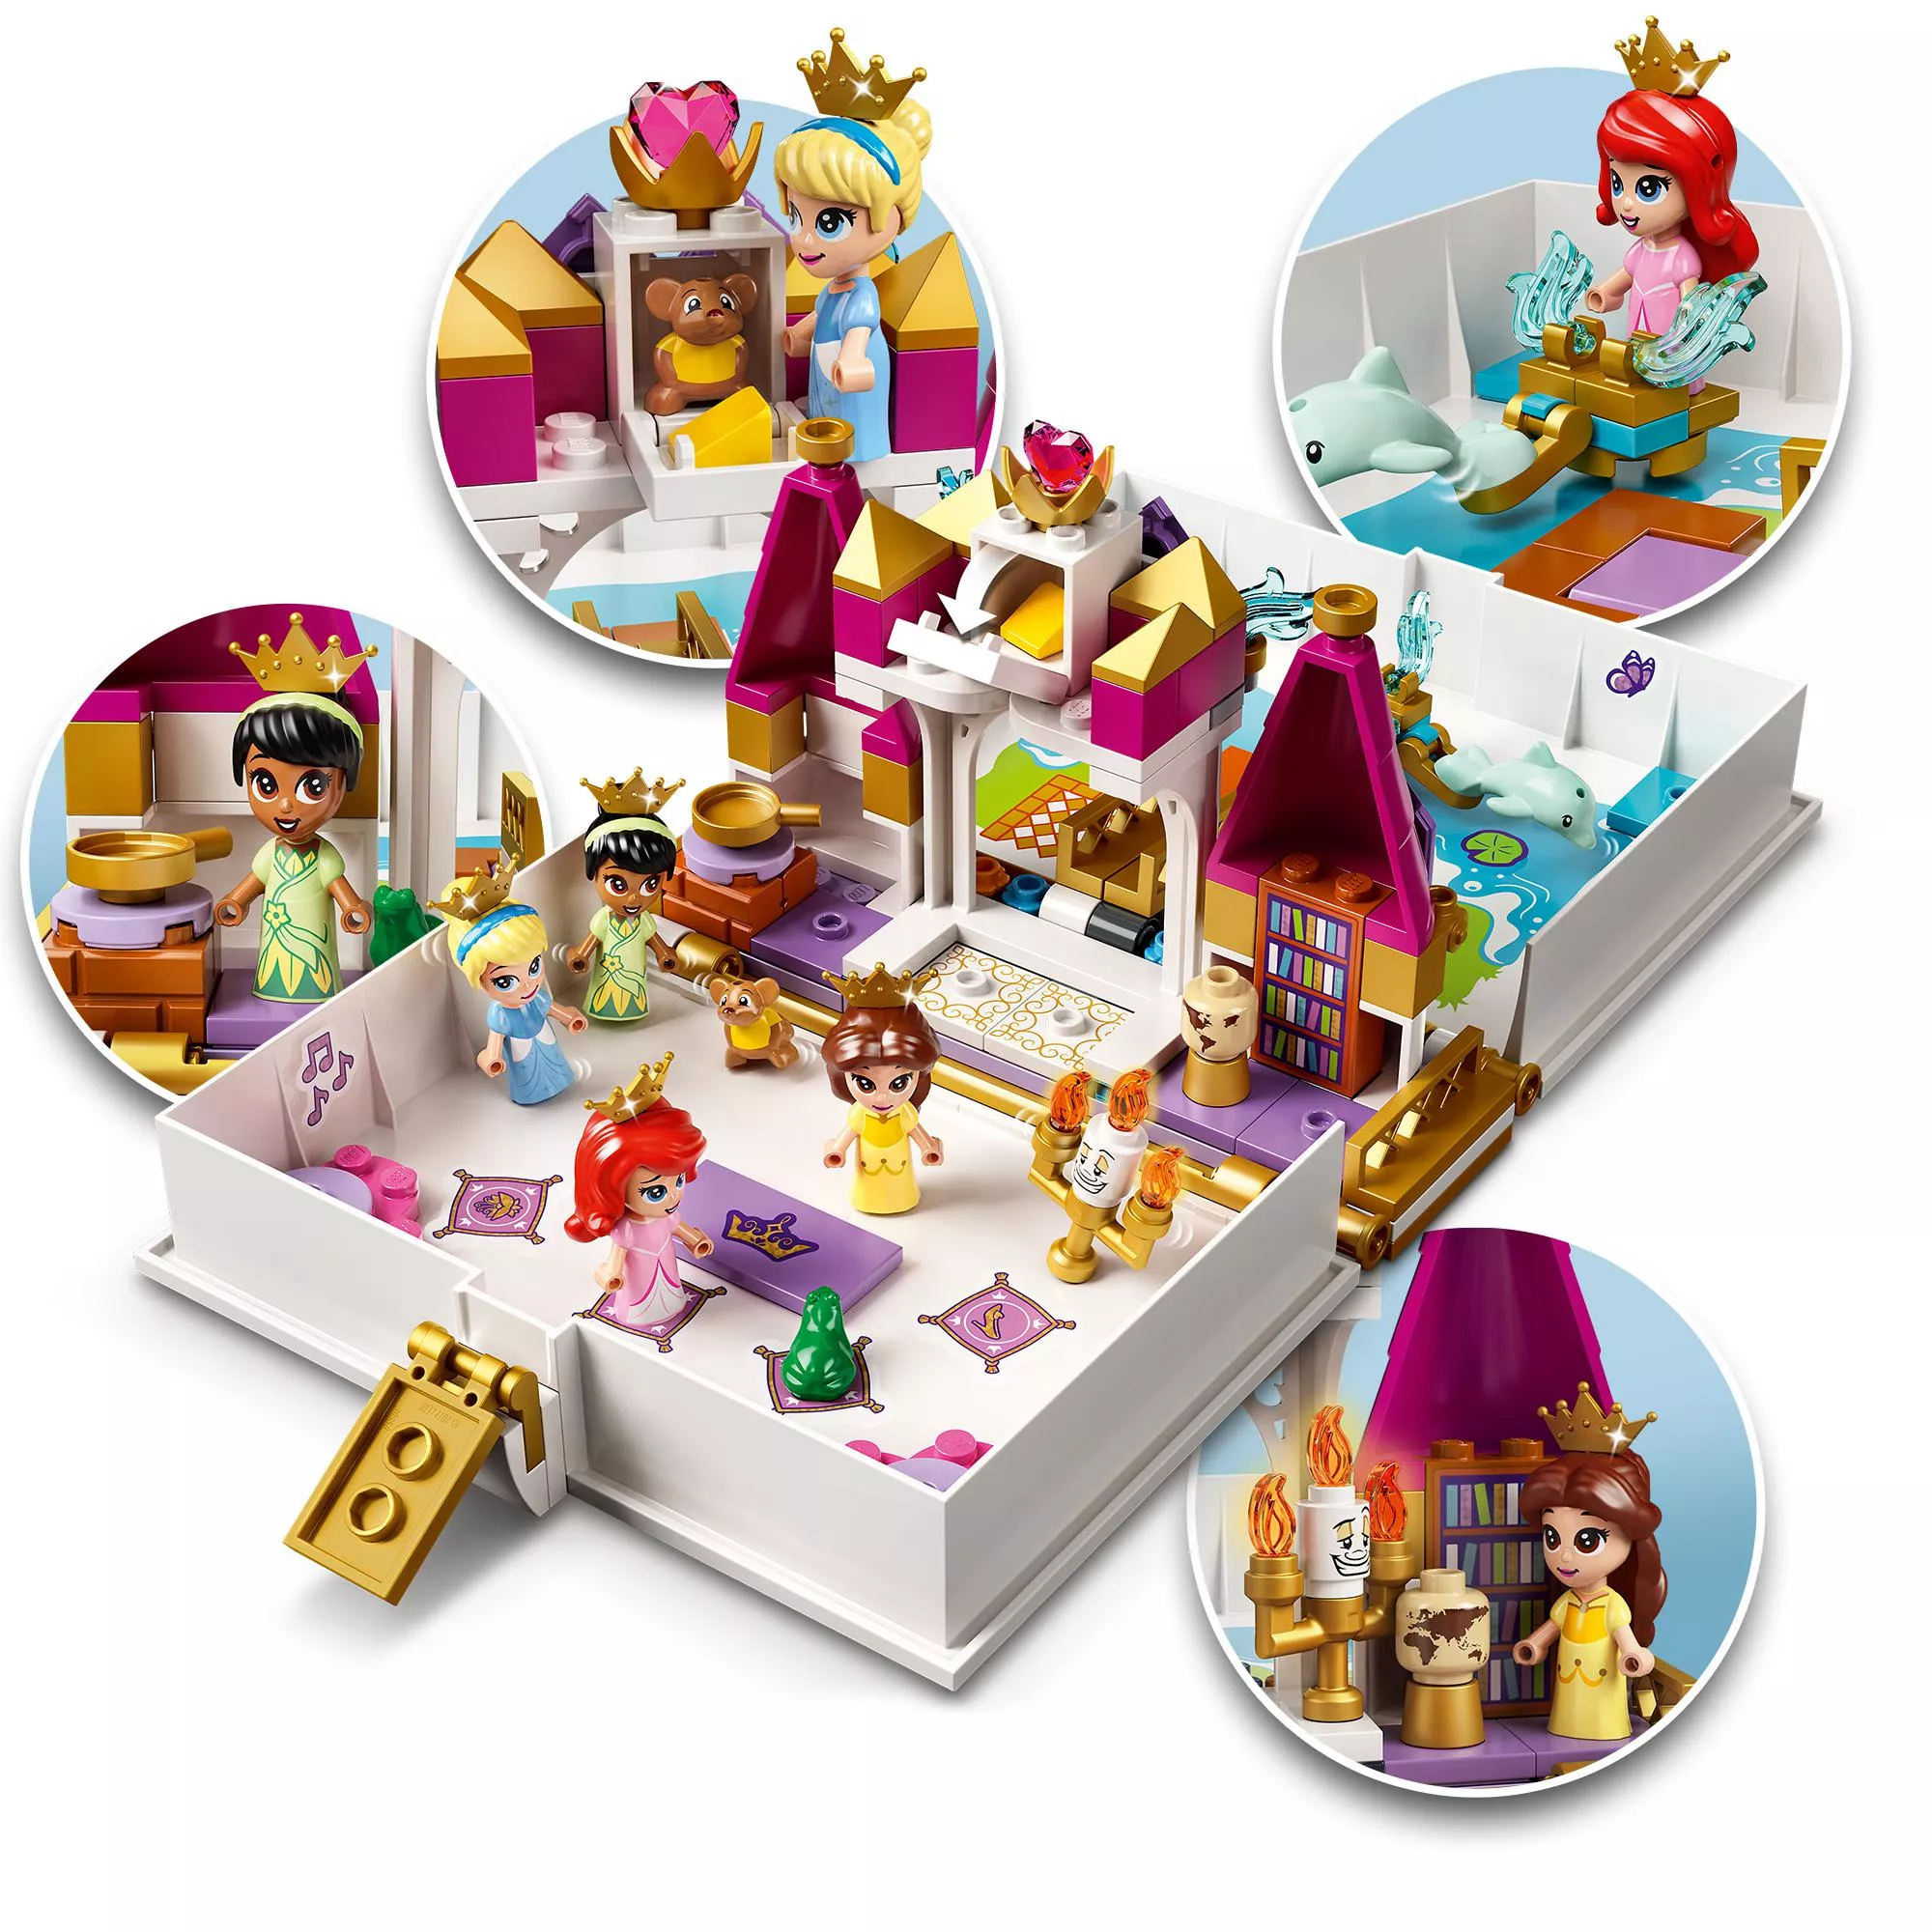 LEGO Disney Princess Märchenbuch Abenteuer mit Arielle, Belle, Cinderella und Tiana